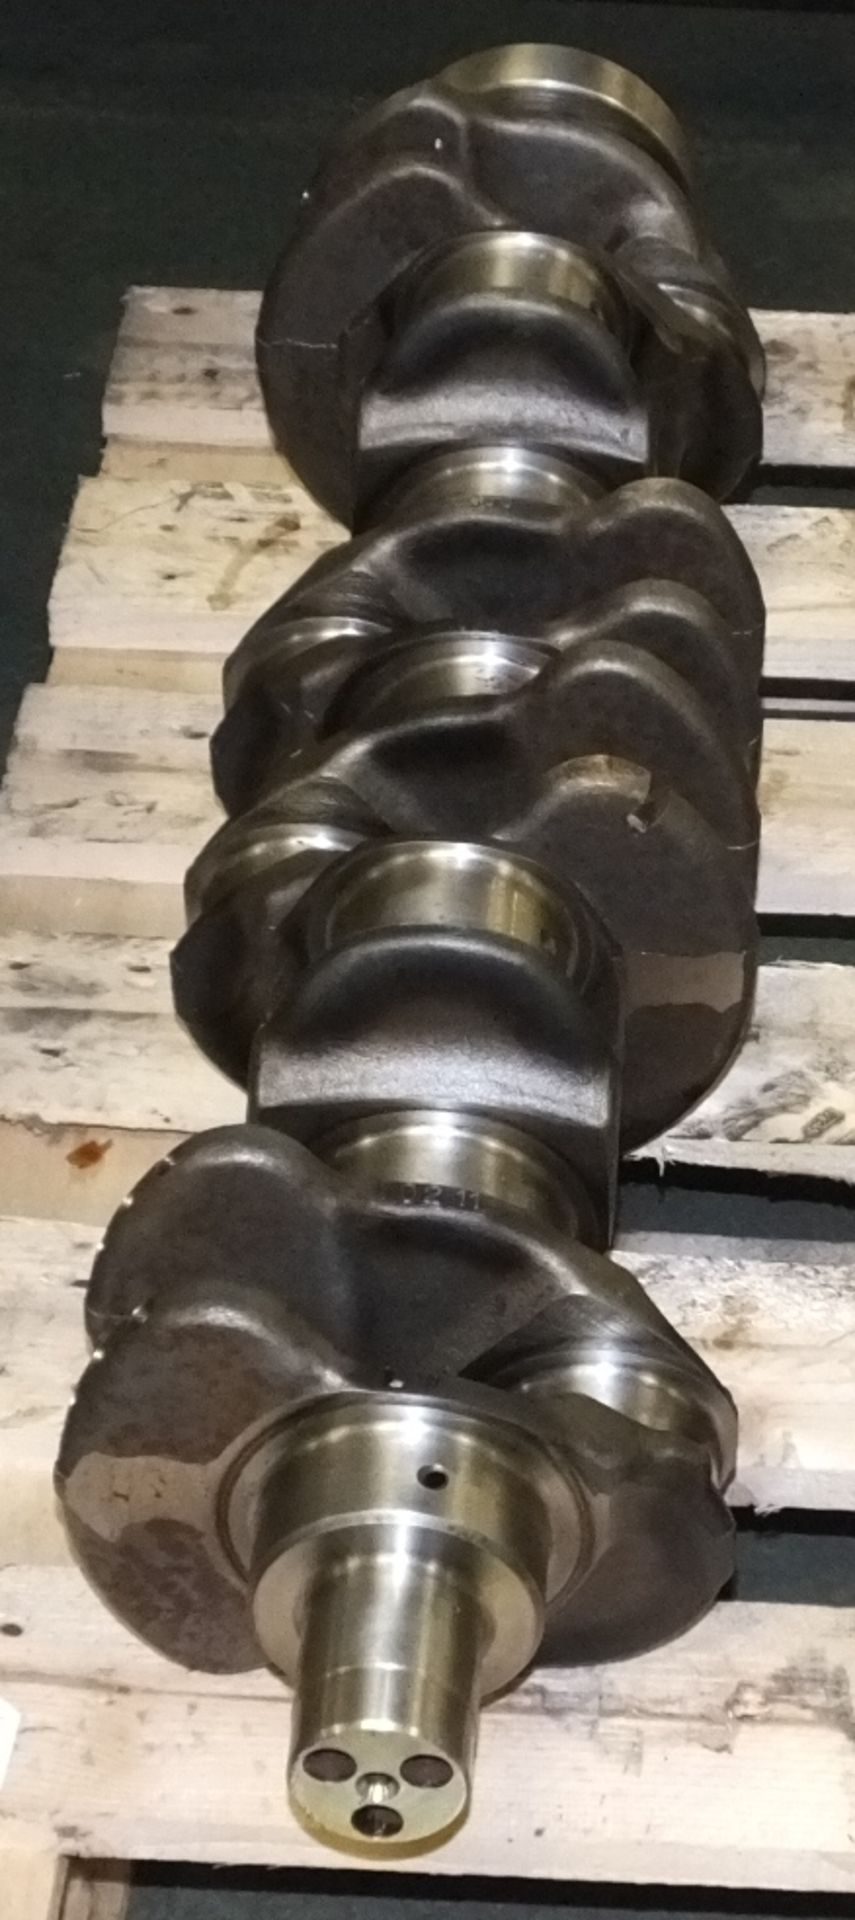 6 cylinder crankshaft for Perkins 6354 engine - Image 2 of 2